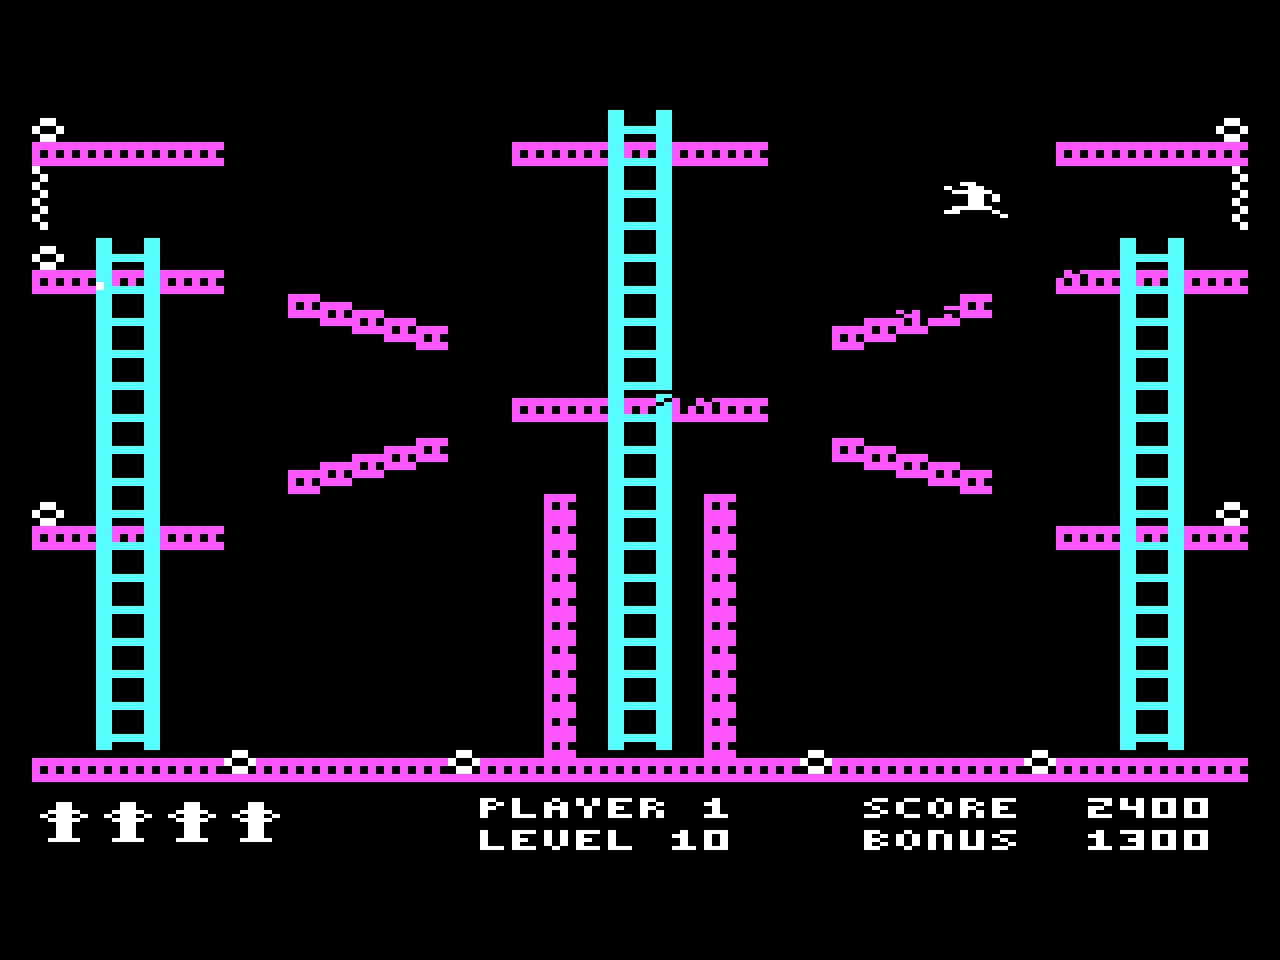 3. Jumpman (1984)